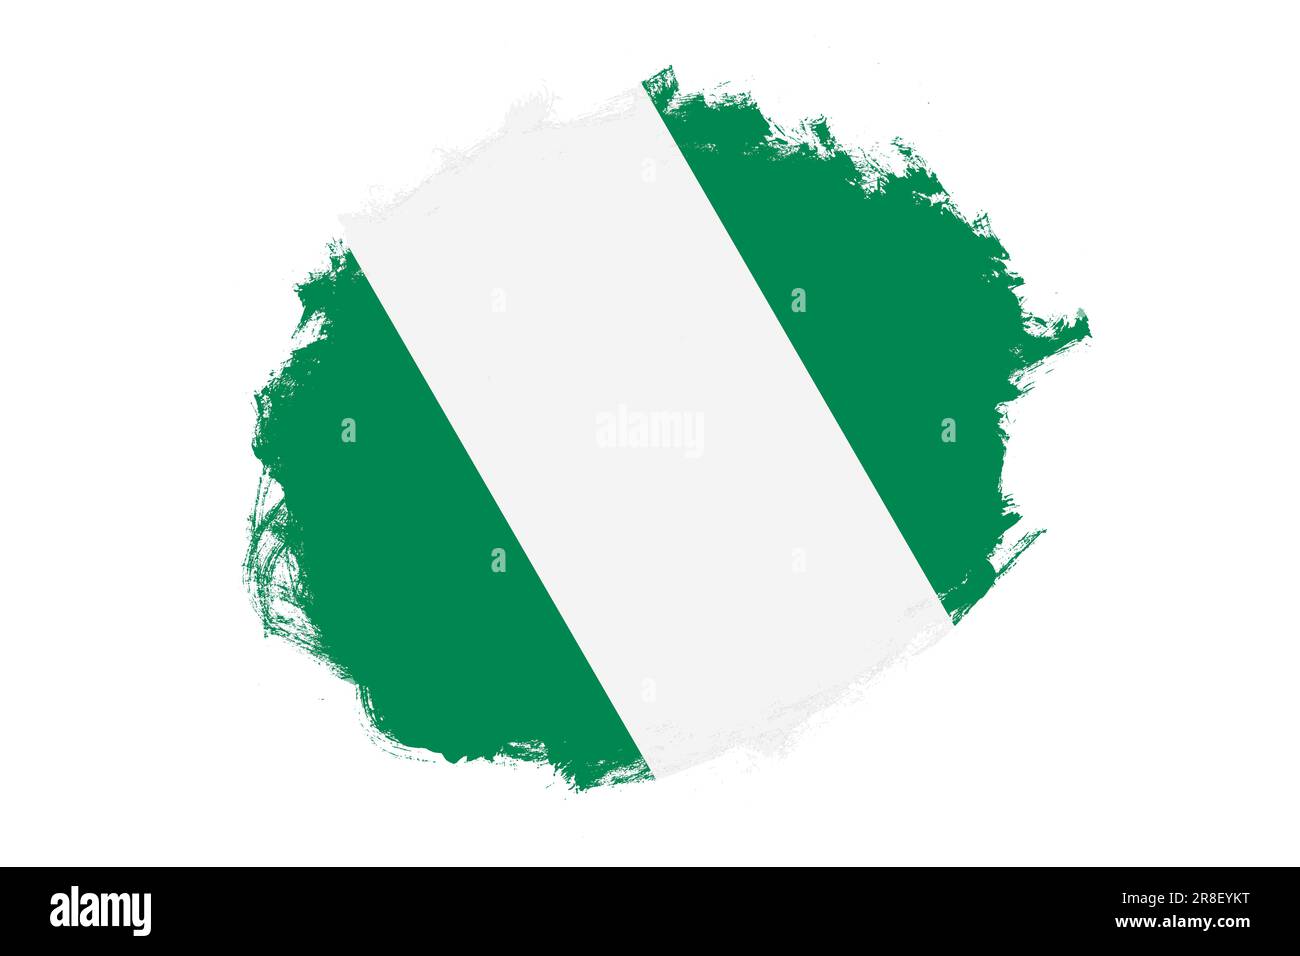 Abgerundete, fleckige Strichpinsel, strukturierte Nationalflagge Nigerias auf weißem Hintergrund Stockfoto